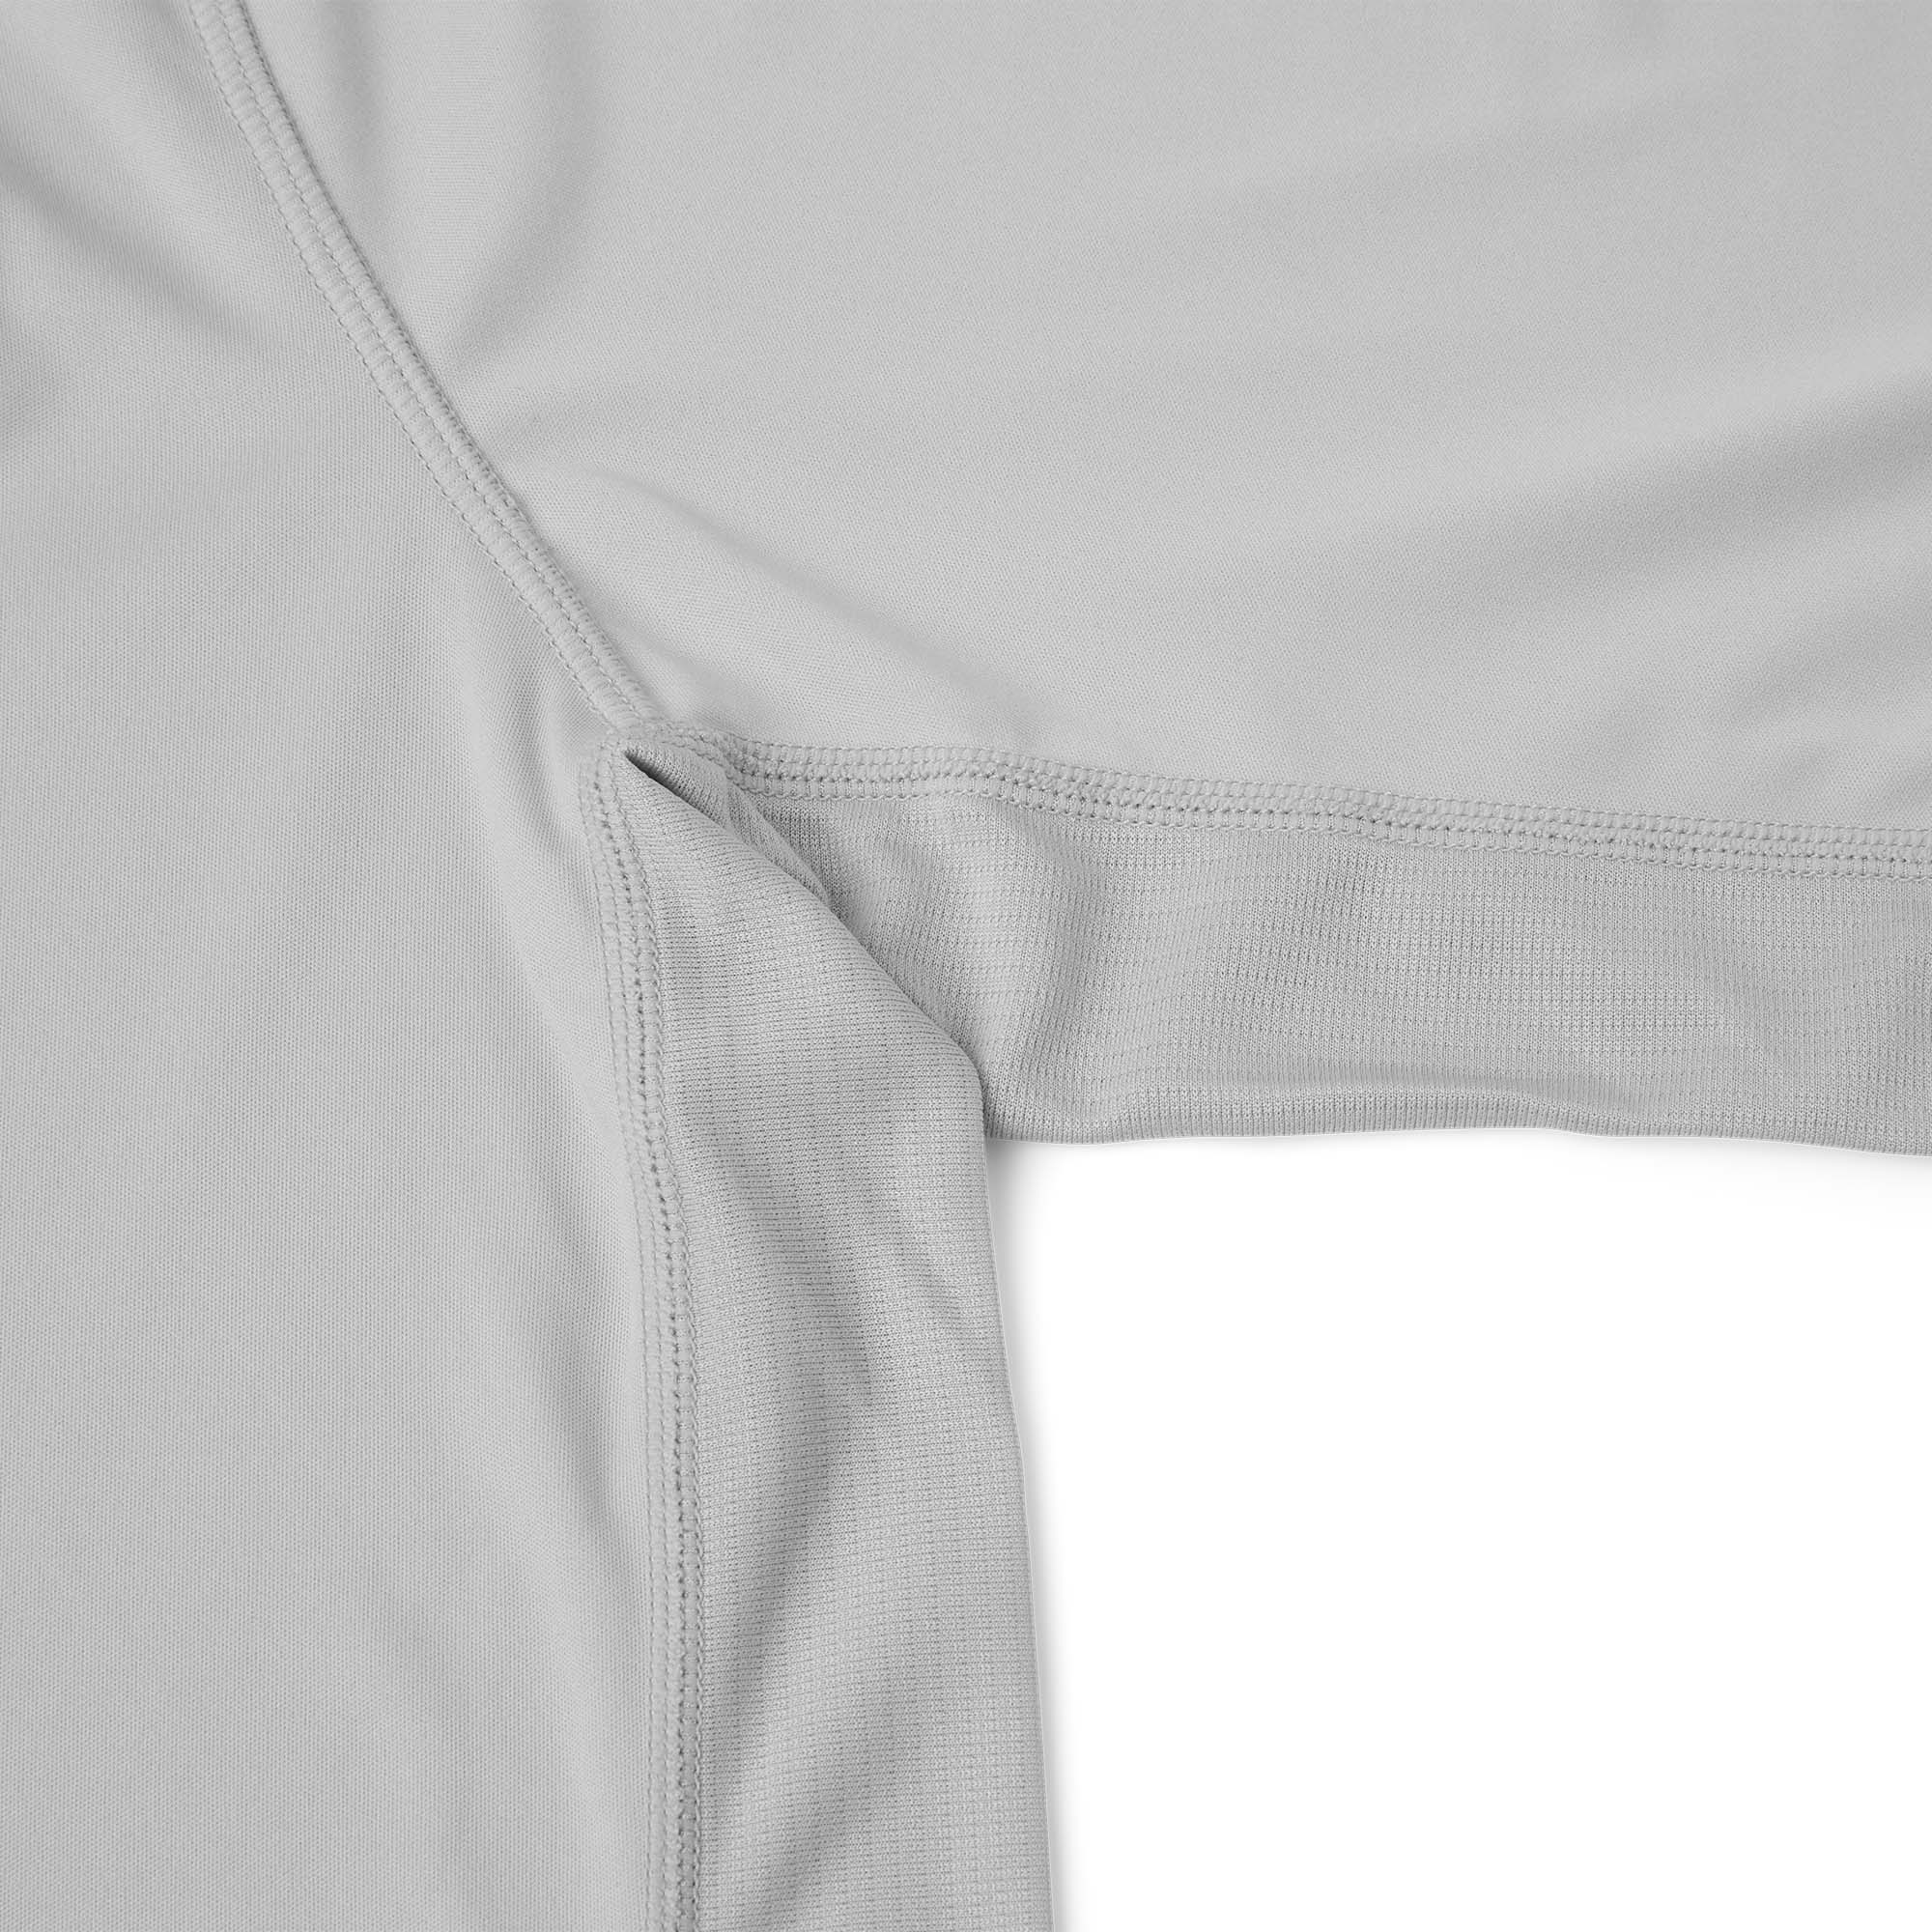 Pelagic Vaportek Hooded Long Sleeve Performance Shirt - Armpit